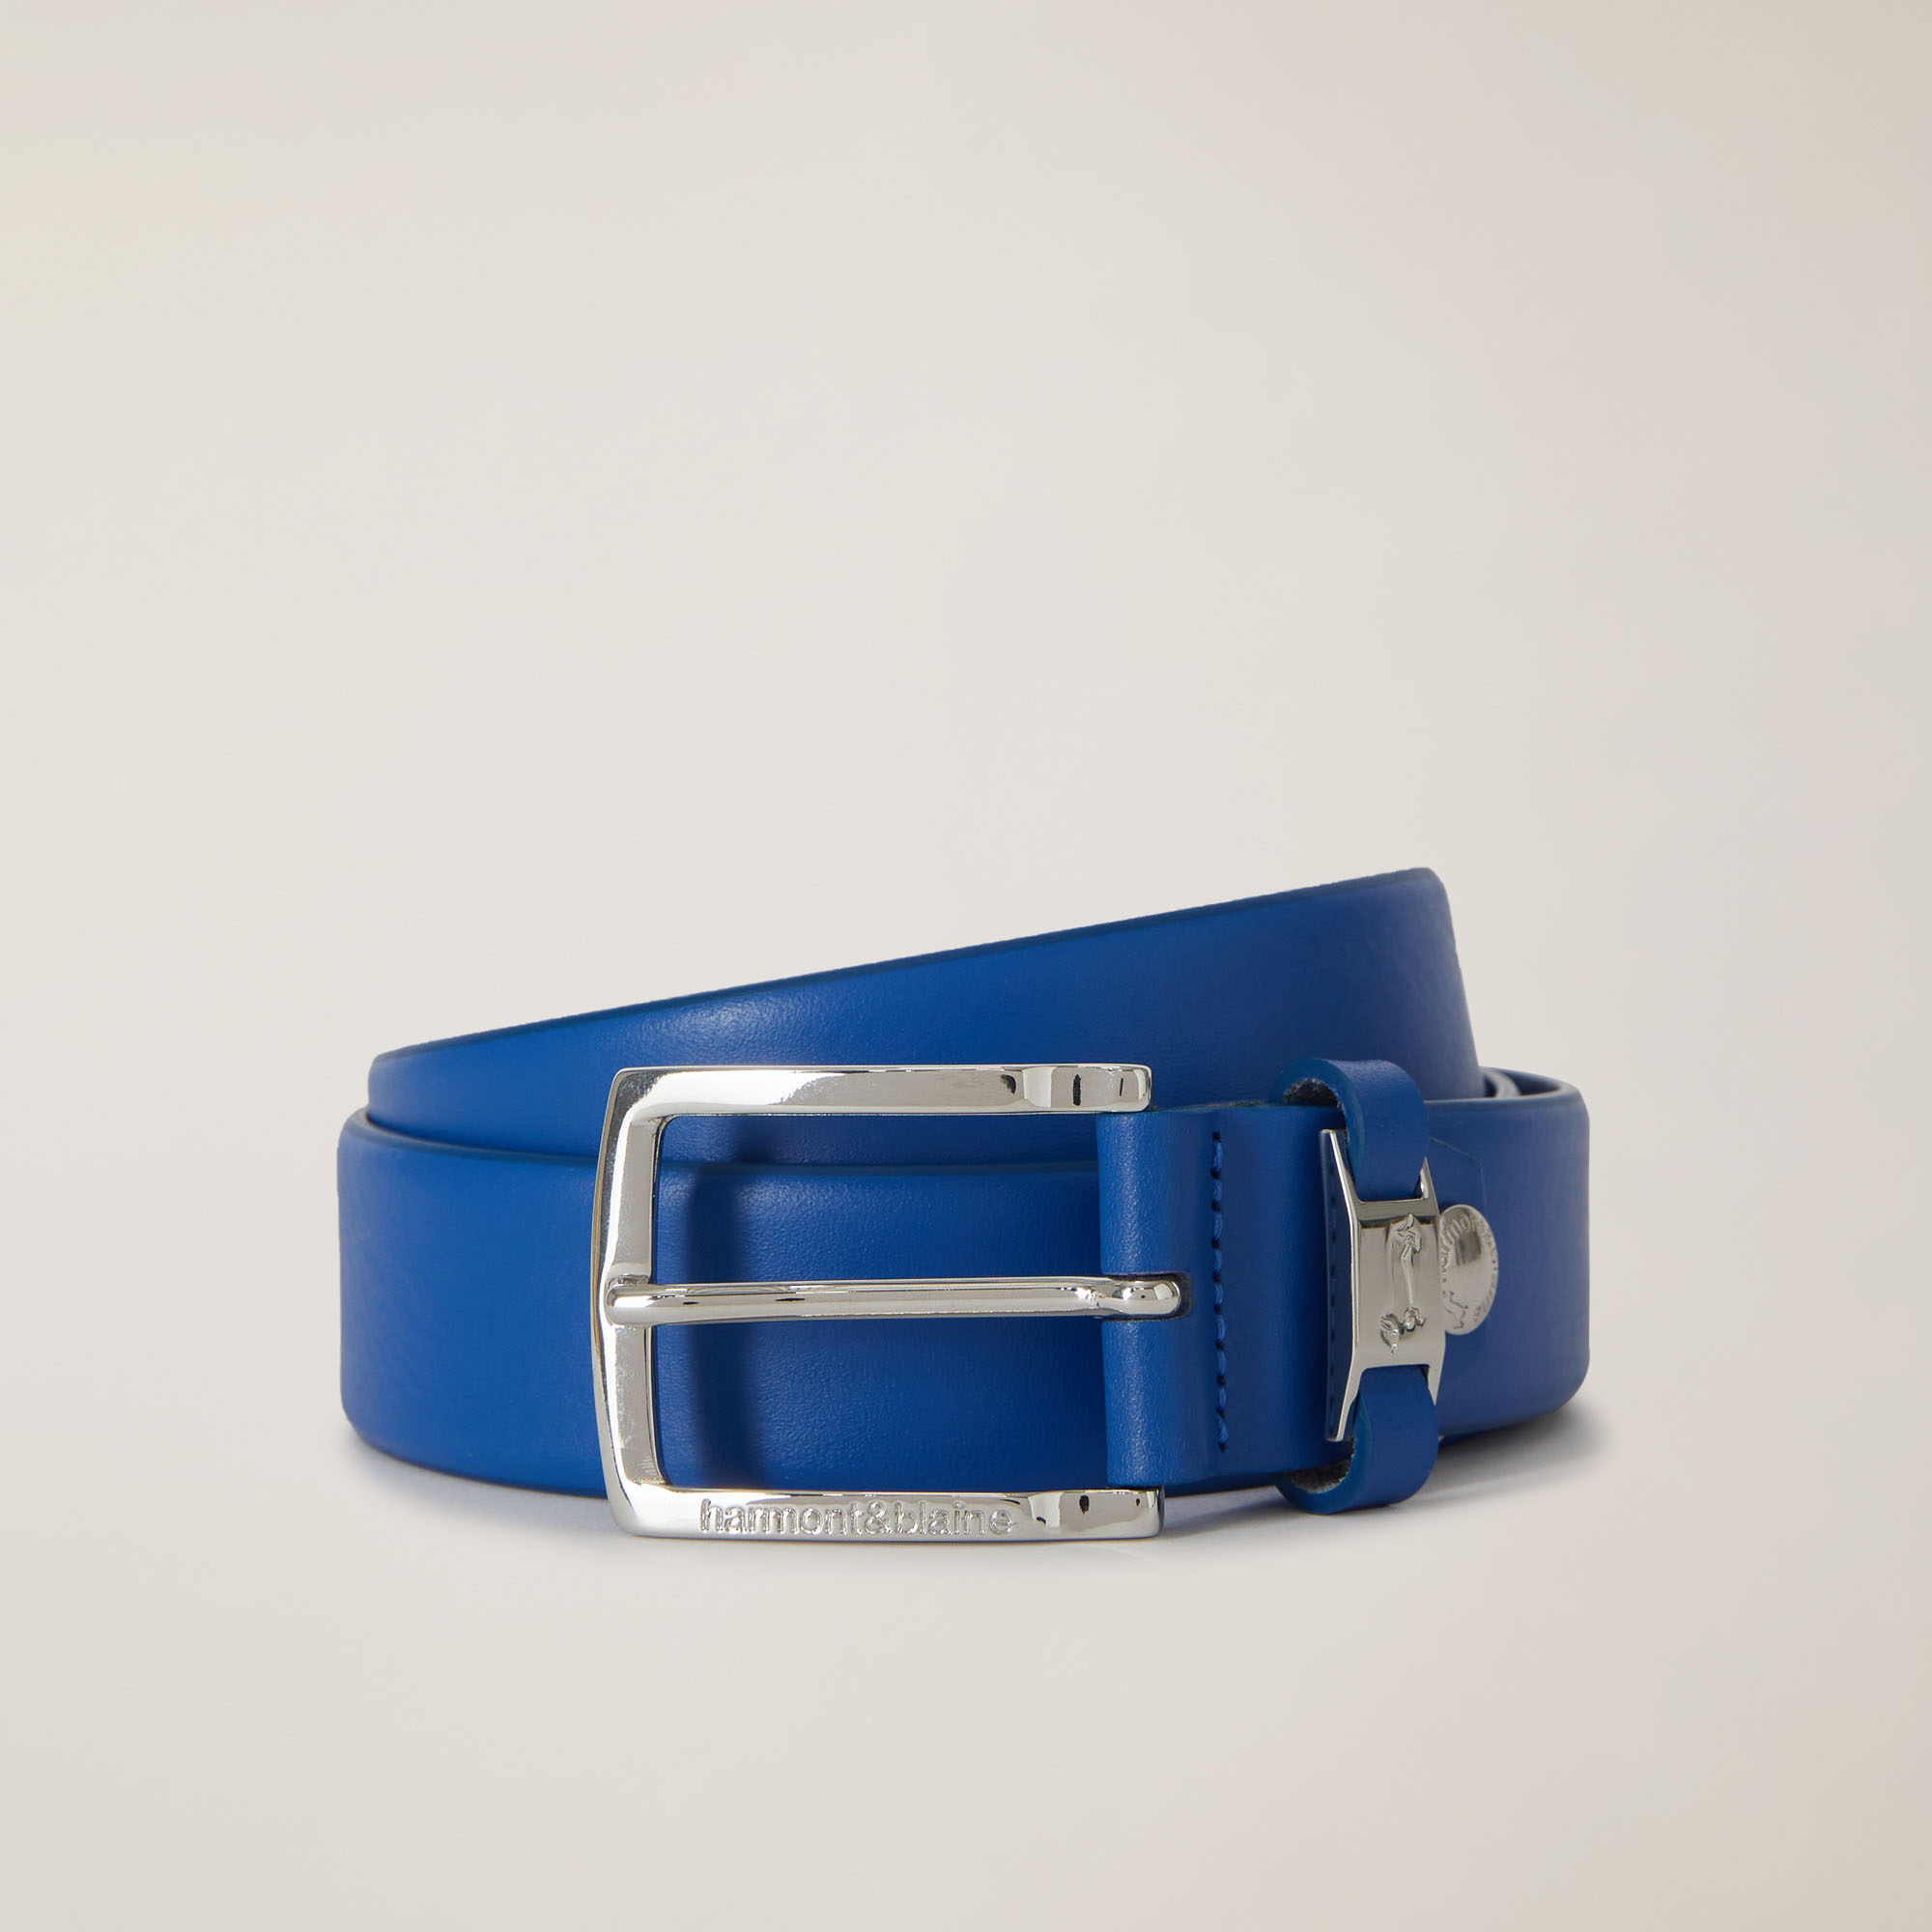 Cintura In Vera Pelle Con Passante Logato, Blu Navy, large